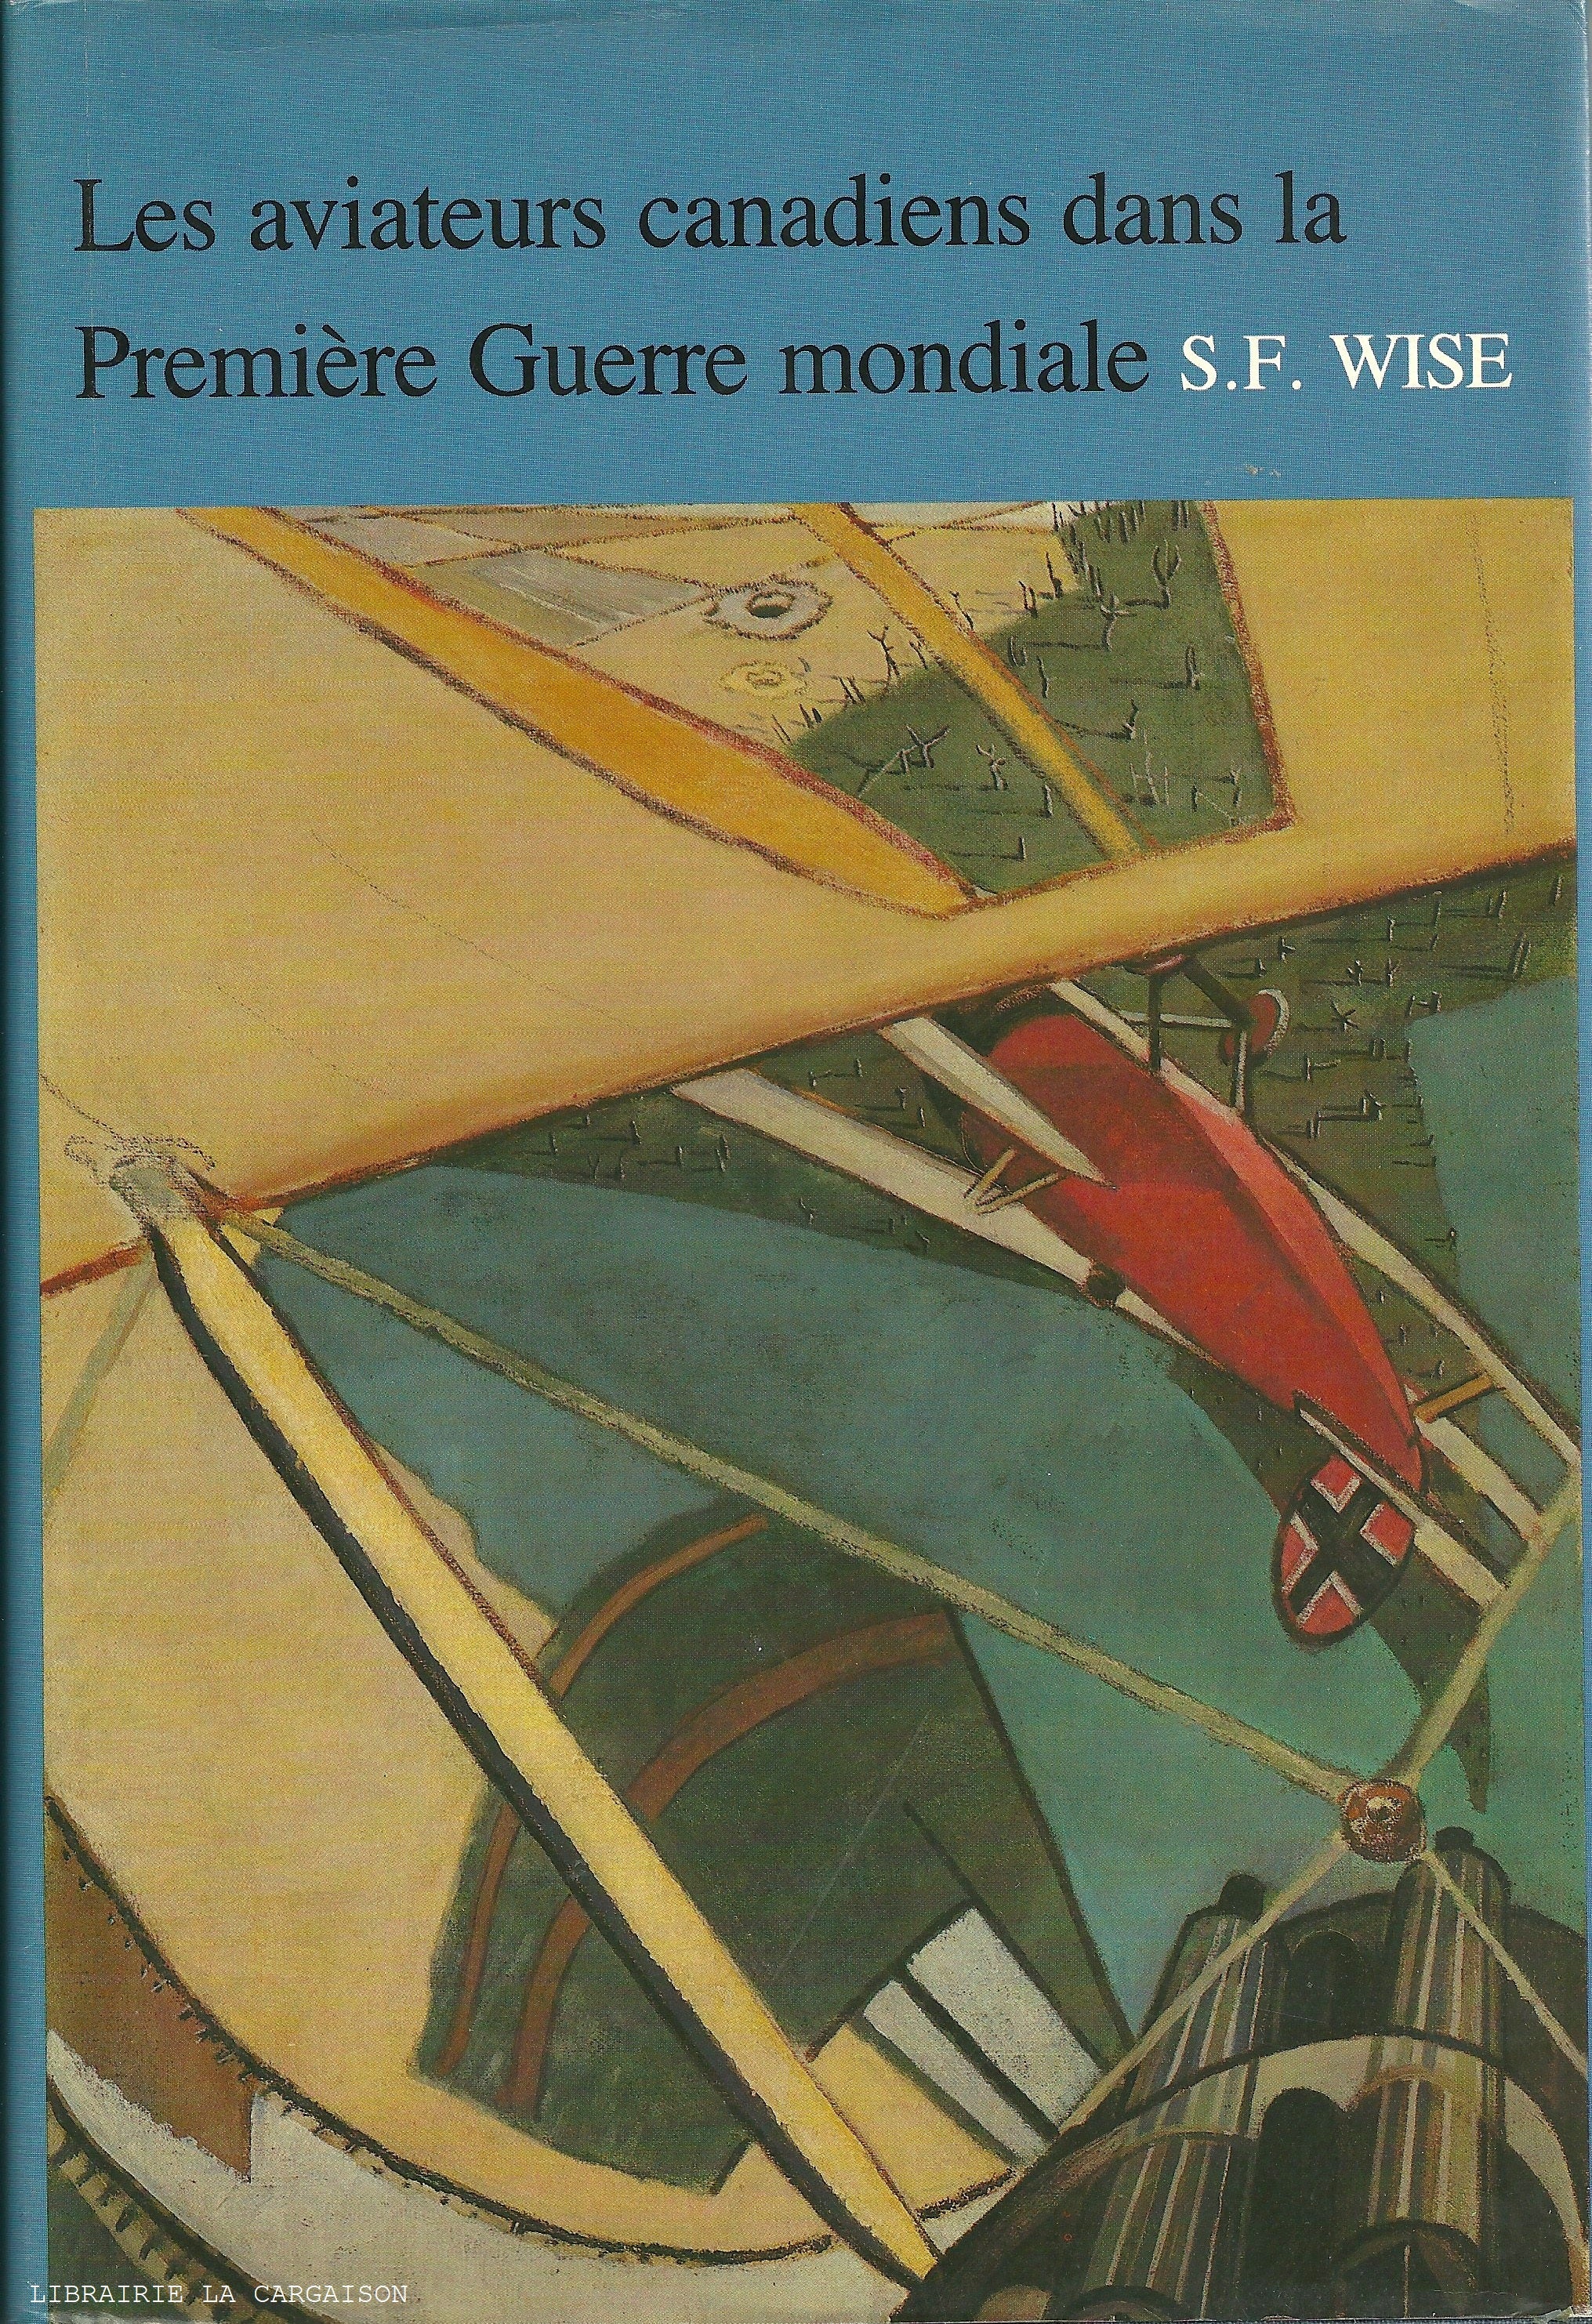 WISE, S.F. Aviateurs canadiens dans la Première Guerre mondiale (Les) : Histoire officielle de l'aviation royale du Canada - Tome 01